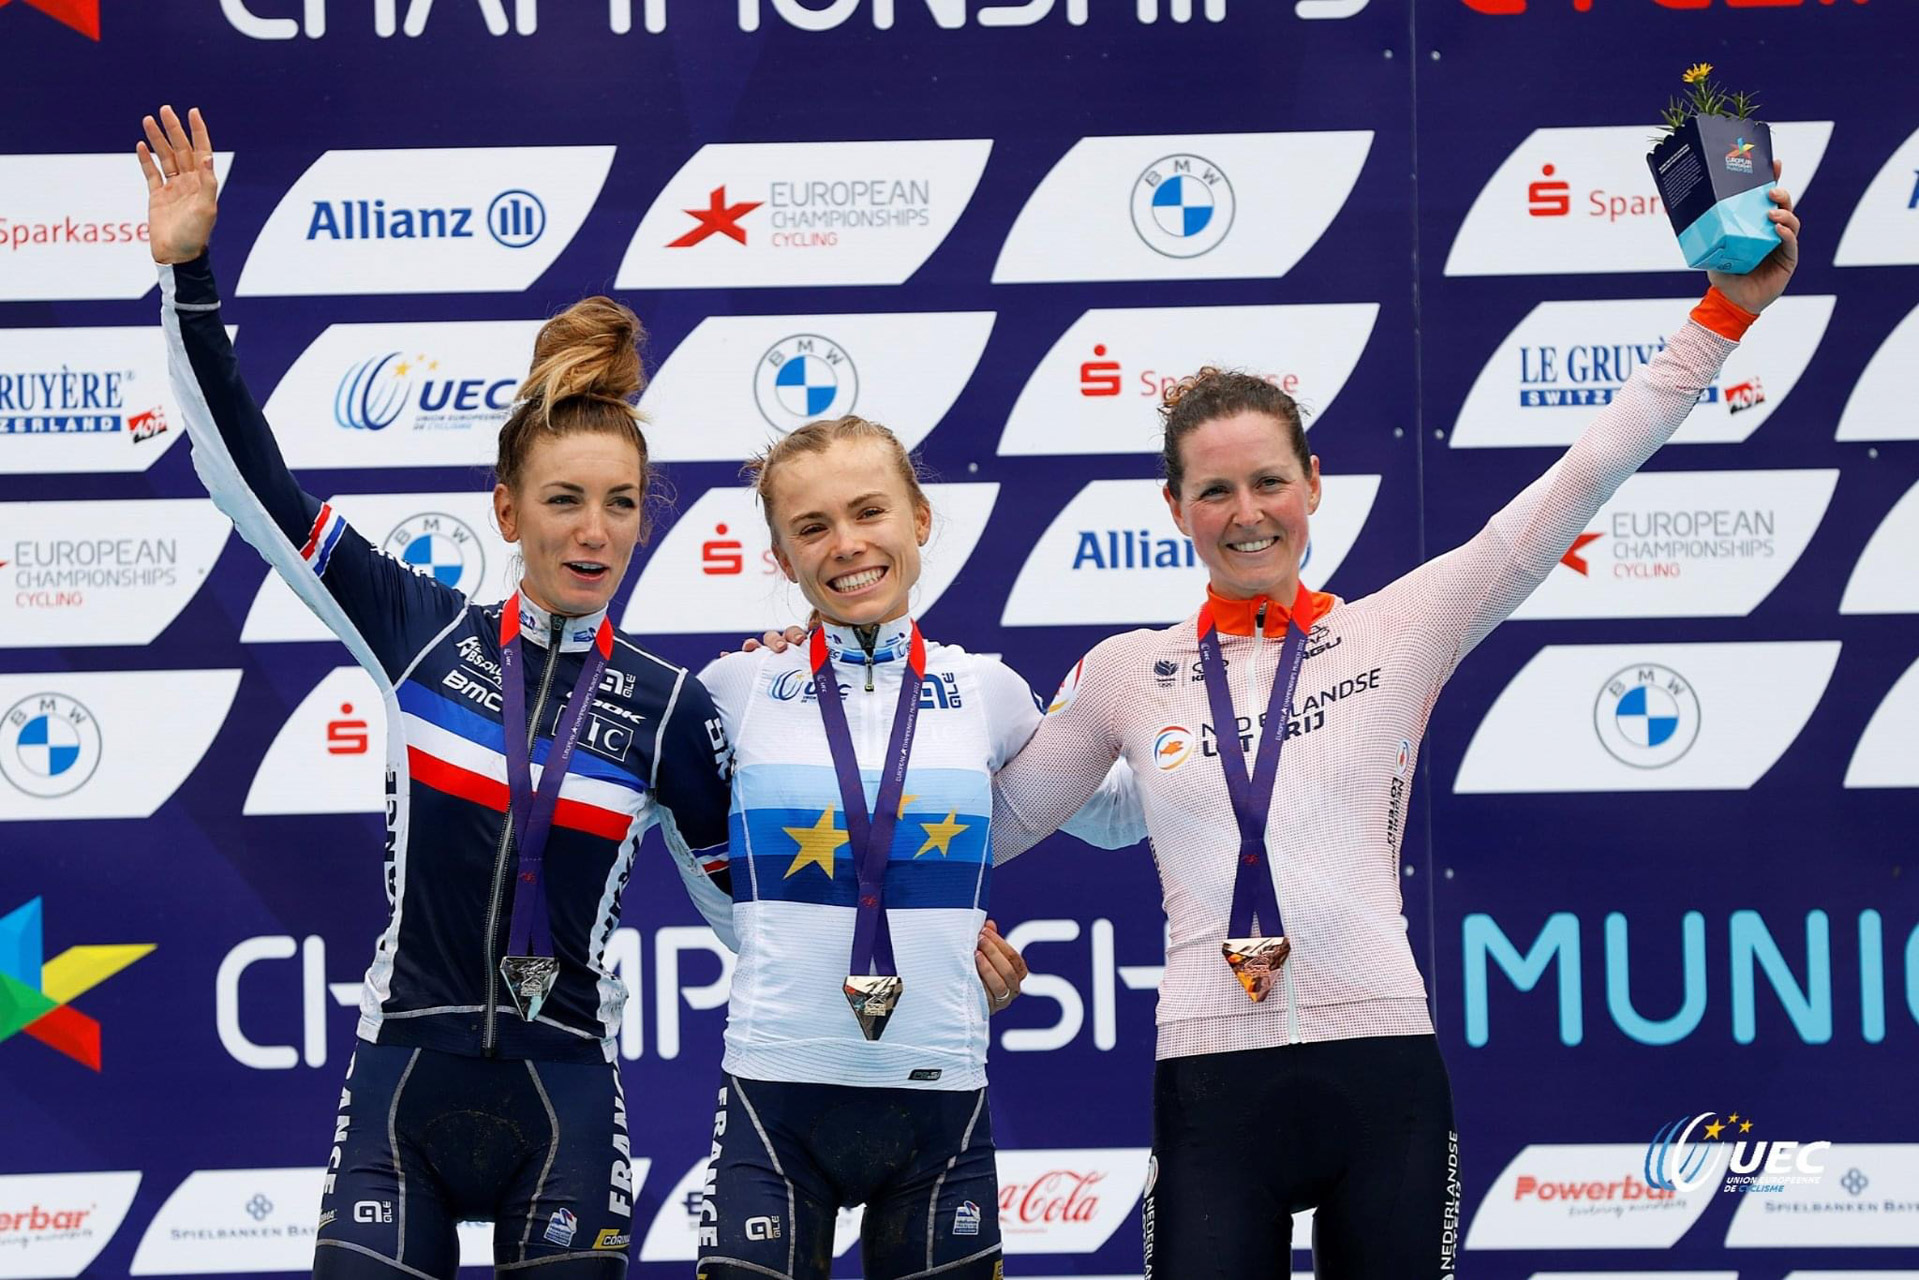 Championnats d’Europe XC femmes 2022 : La France en conquête du podium !